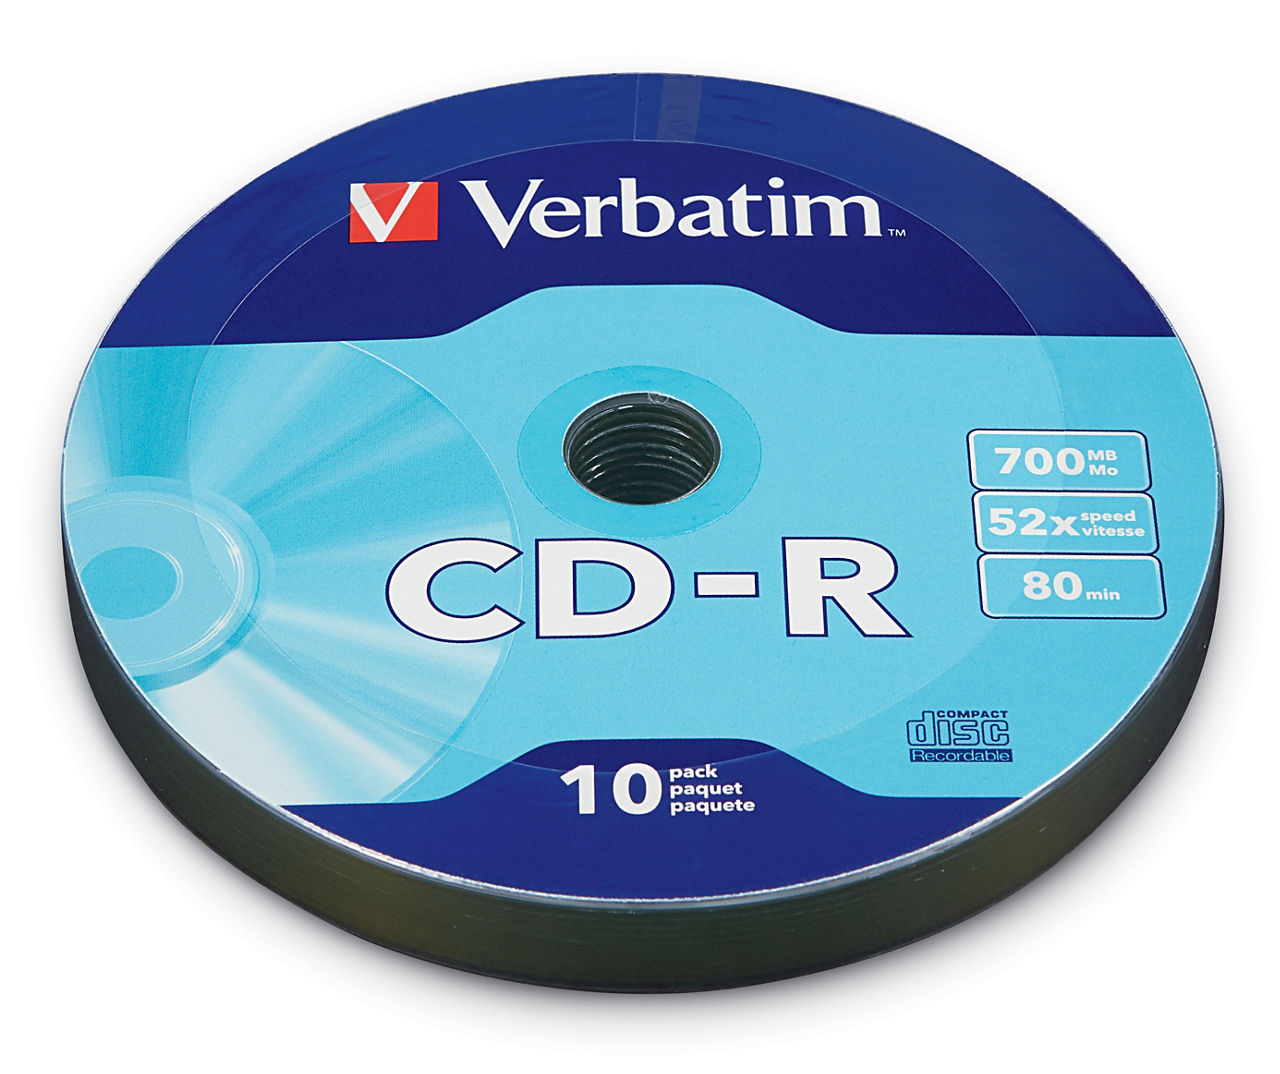 CD-R Verbatim. CD-RW Verbatim. Verbatim Music CD-R. Verbatim CD-R 52x Printable.